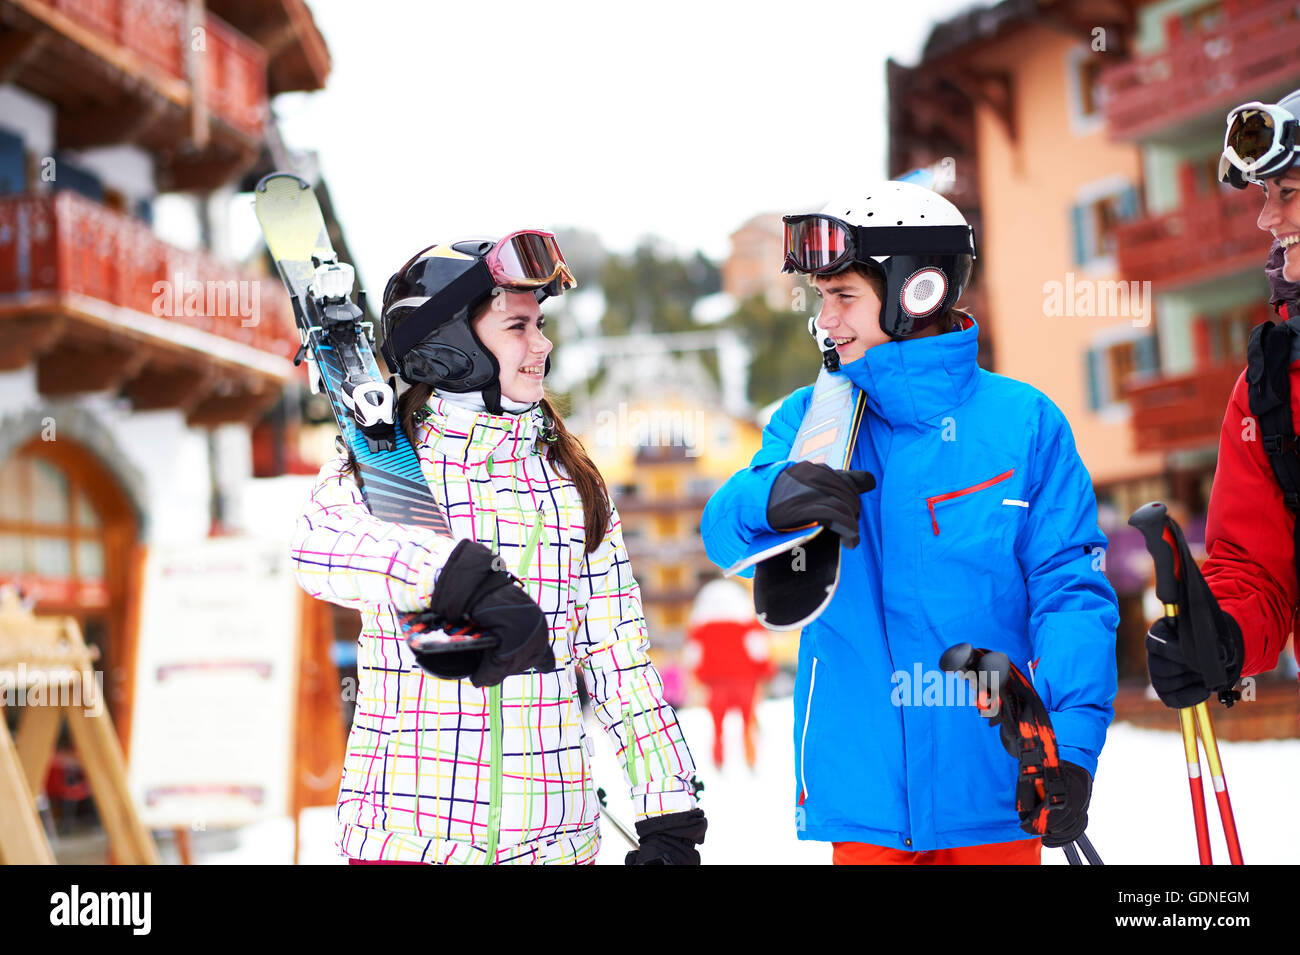 Ado fille et garçon, transportant des skis Banque D'Images